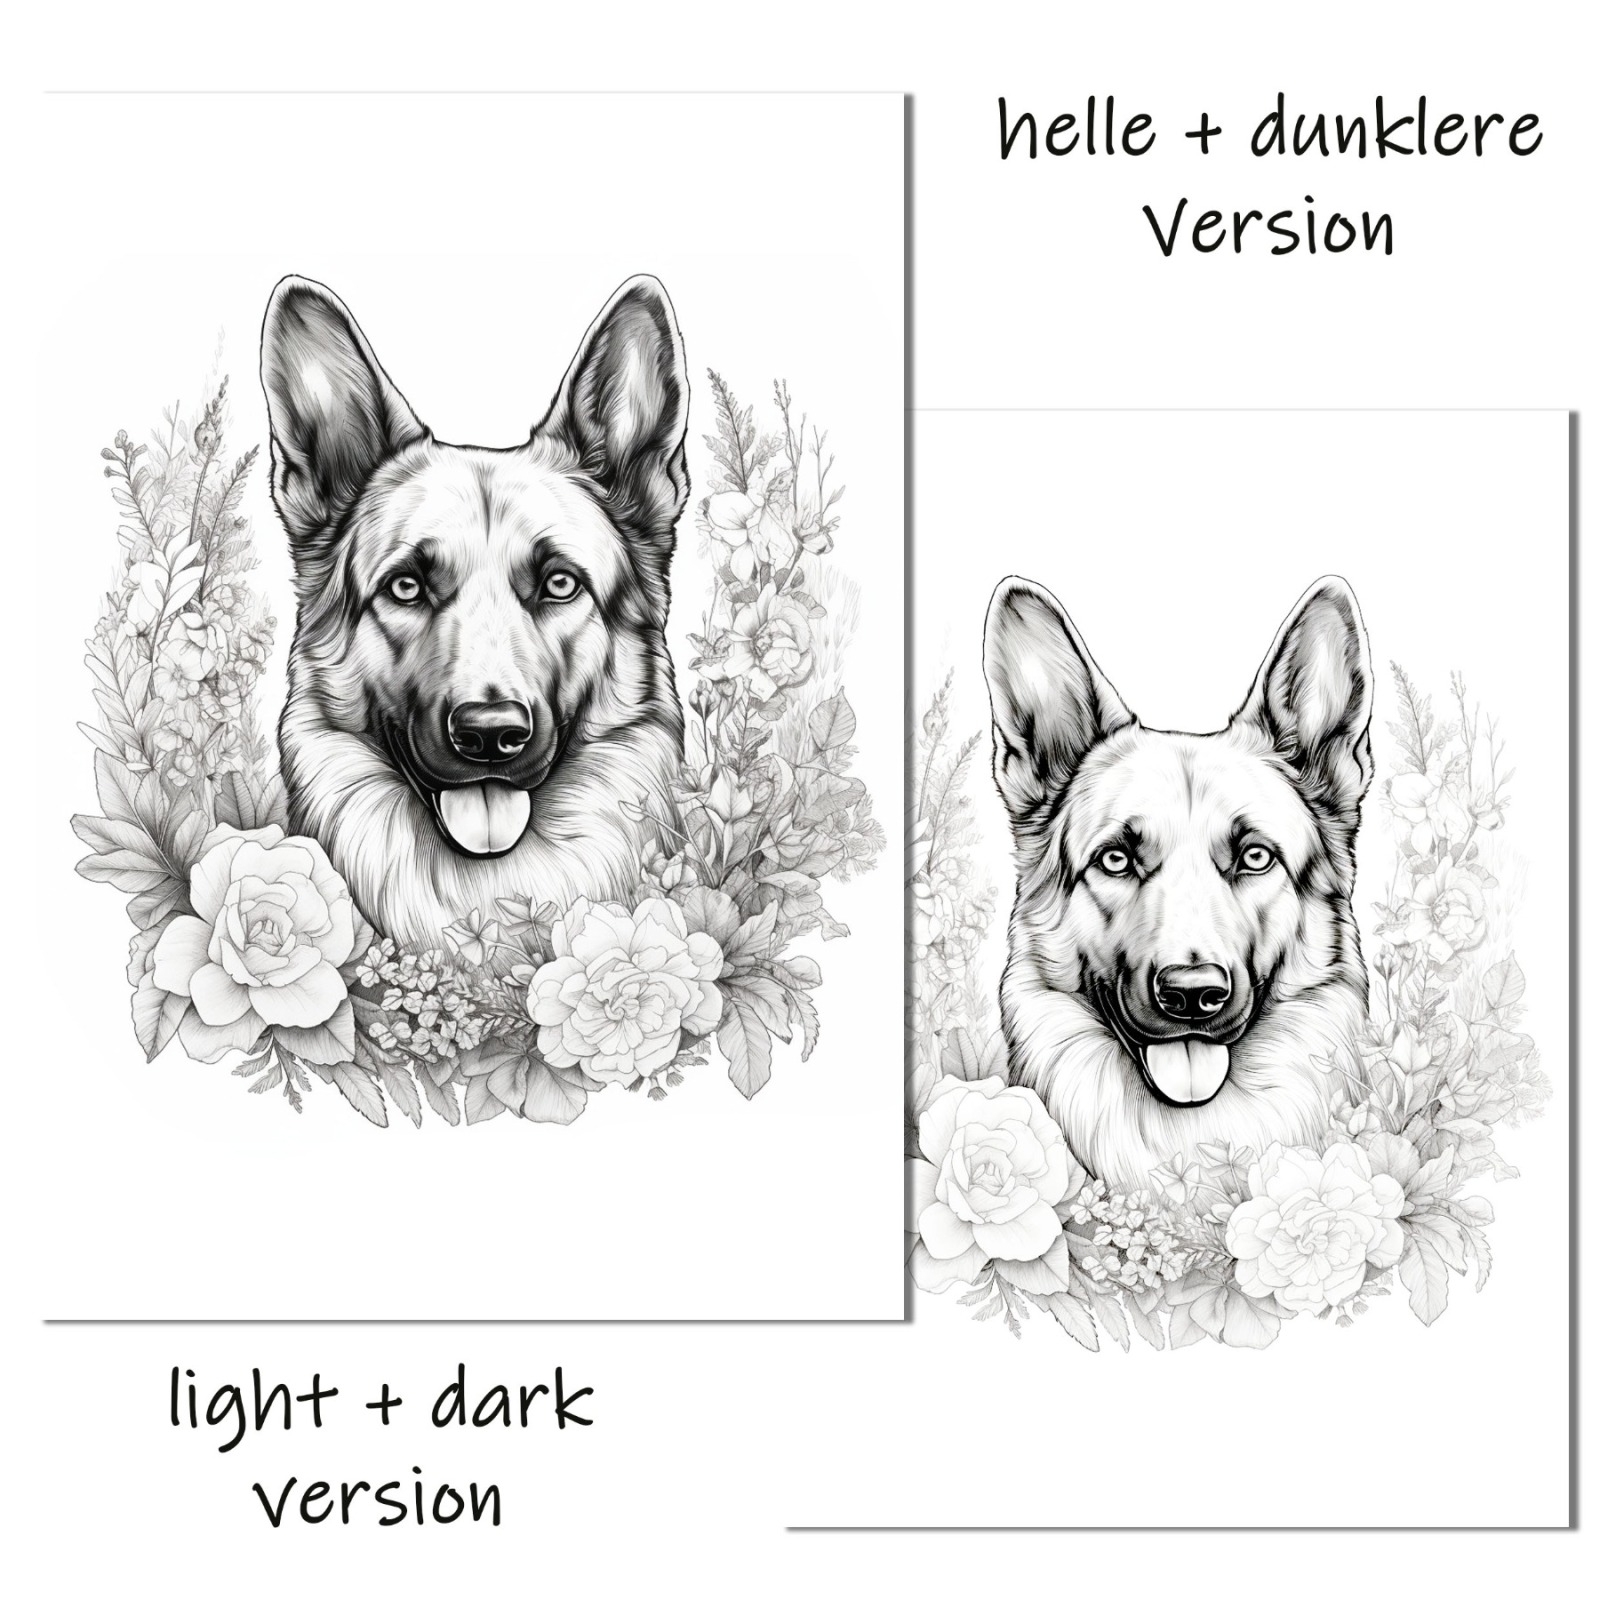 Ausmalbild Schäferhund, zum Download und selbst ausdrucken